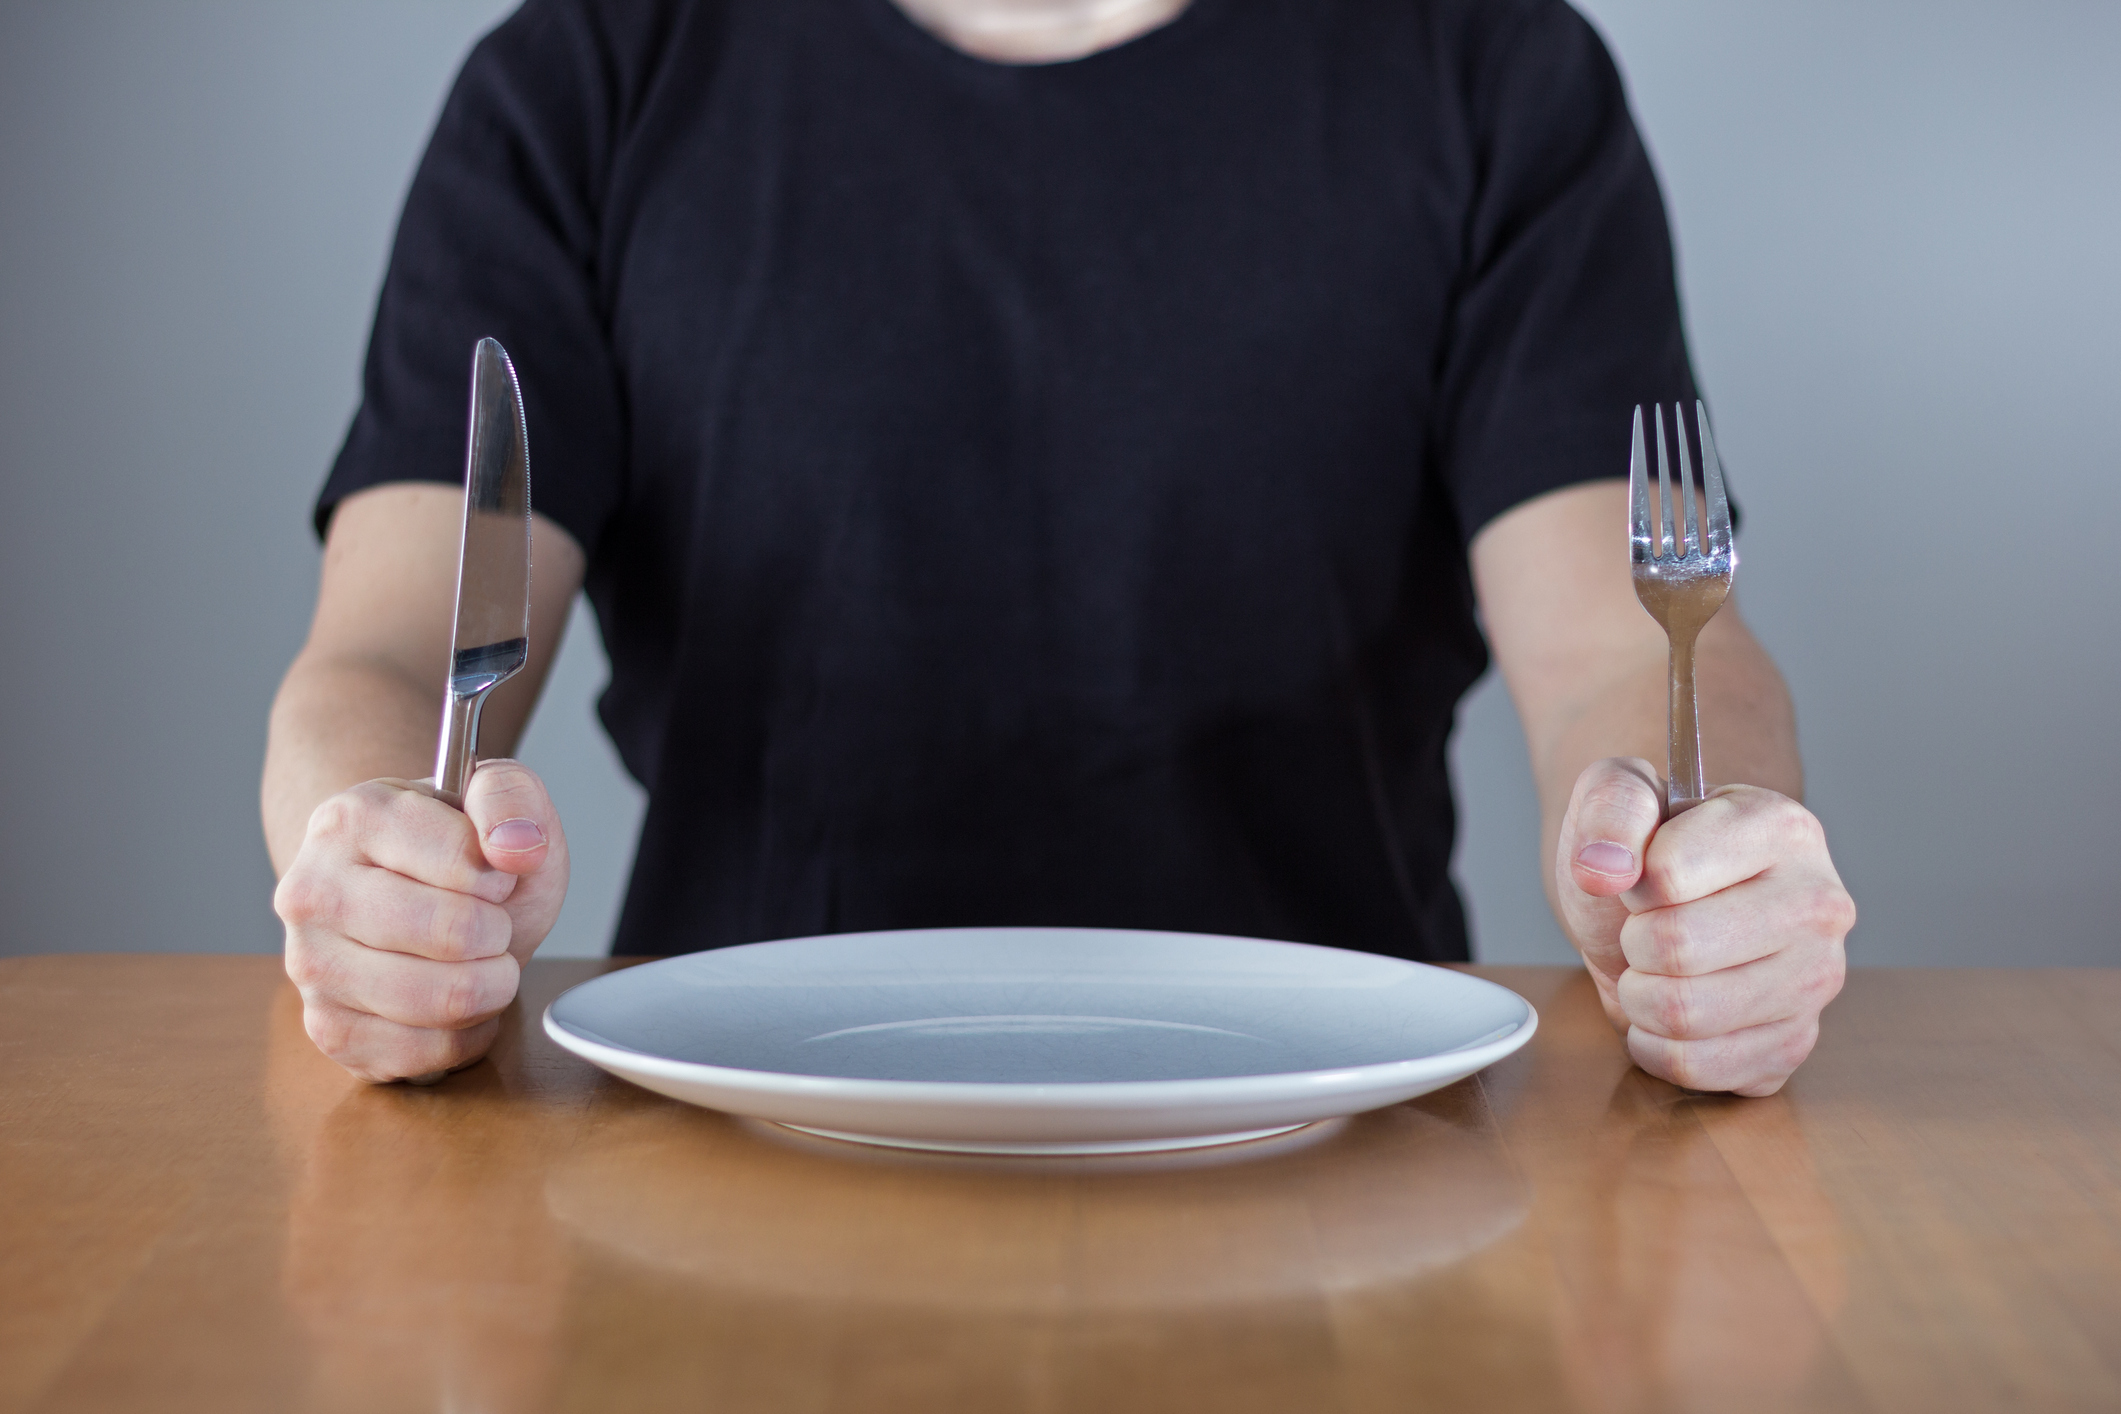 Полу голодный. Человек с пустой тарелкой. Тарелка с вилкой. Пустая тарелка с вилкой.